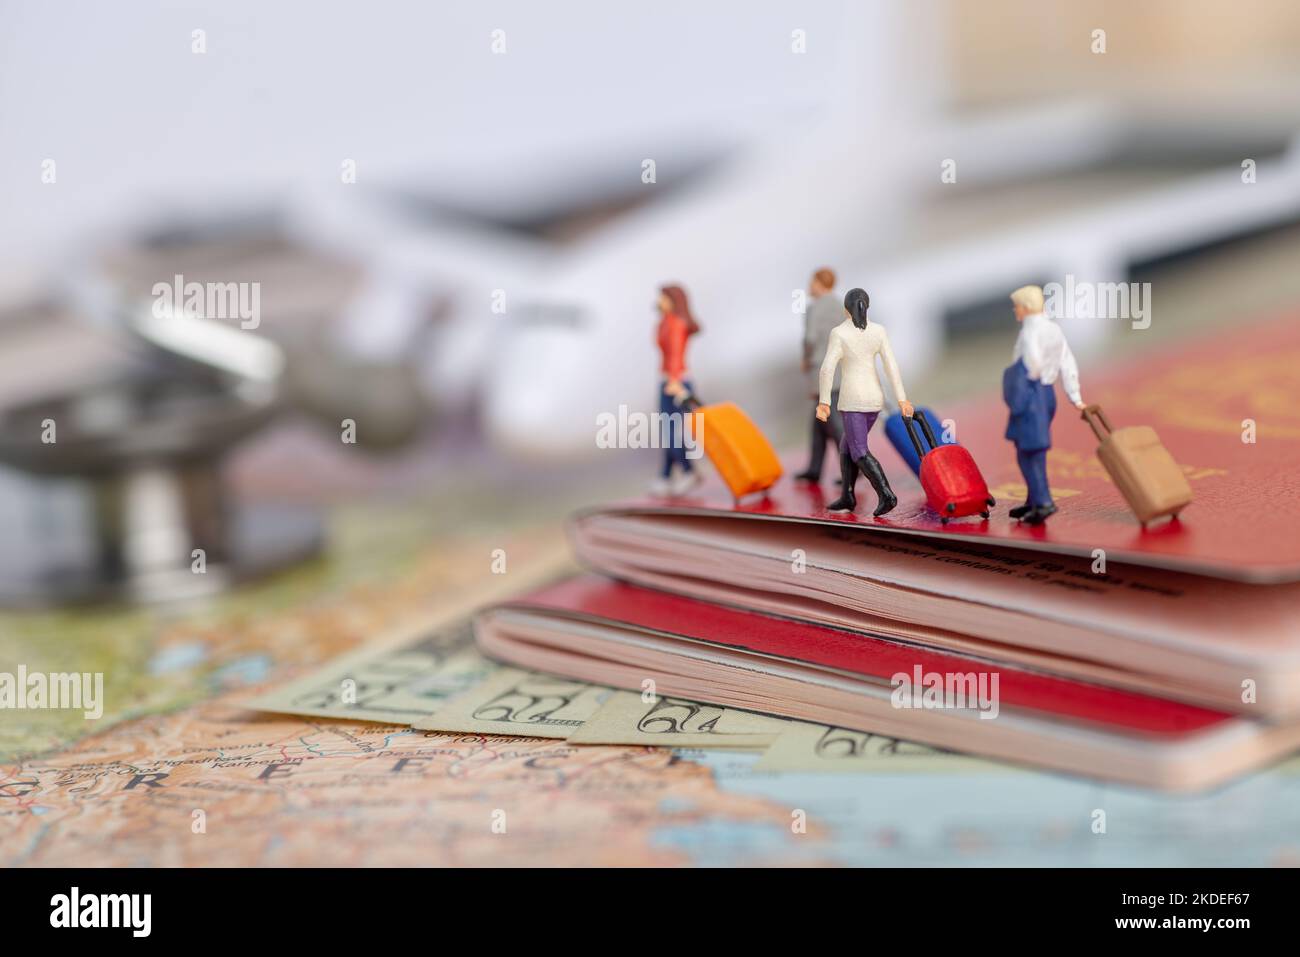 Miniaturpassagierkonzept von Menschen, die ins Ausland reisen - Versicherung oder Medizintourismus-Konzept. Stockfoto